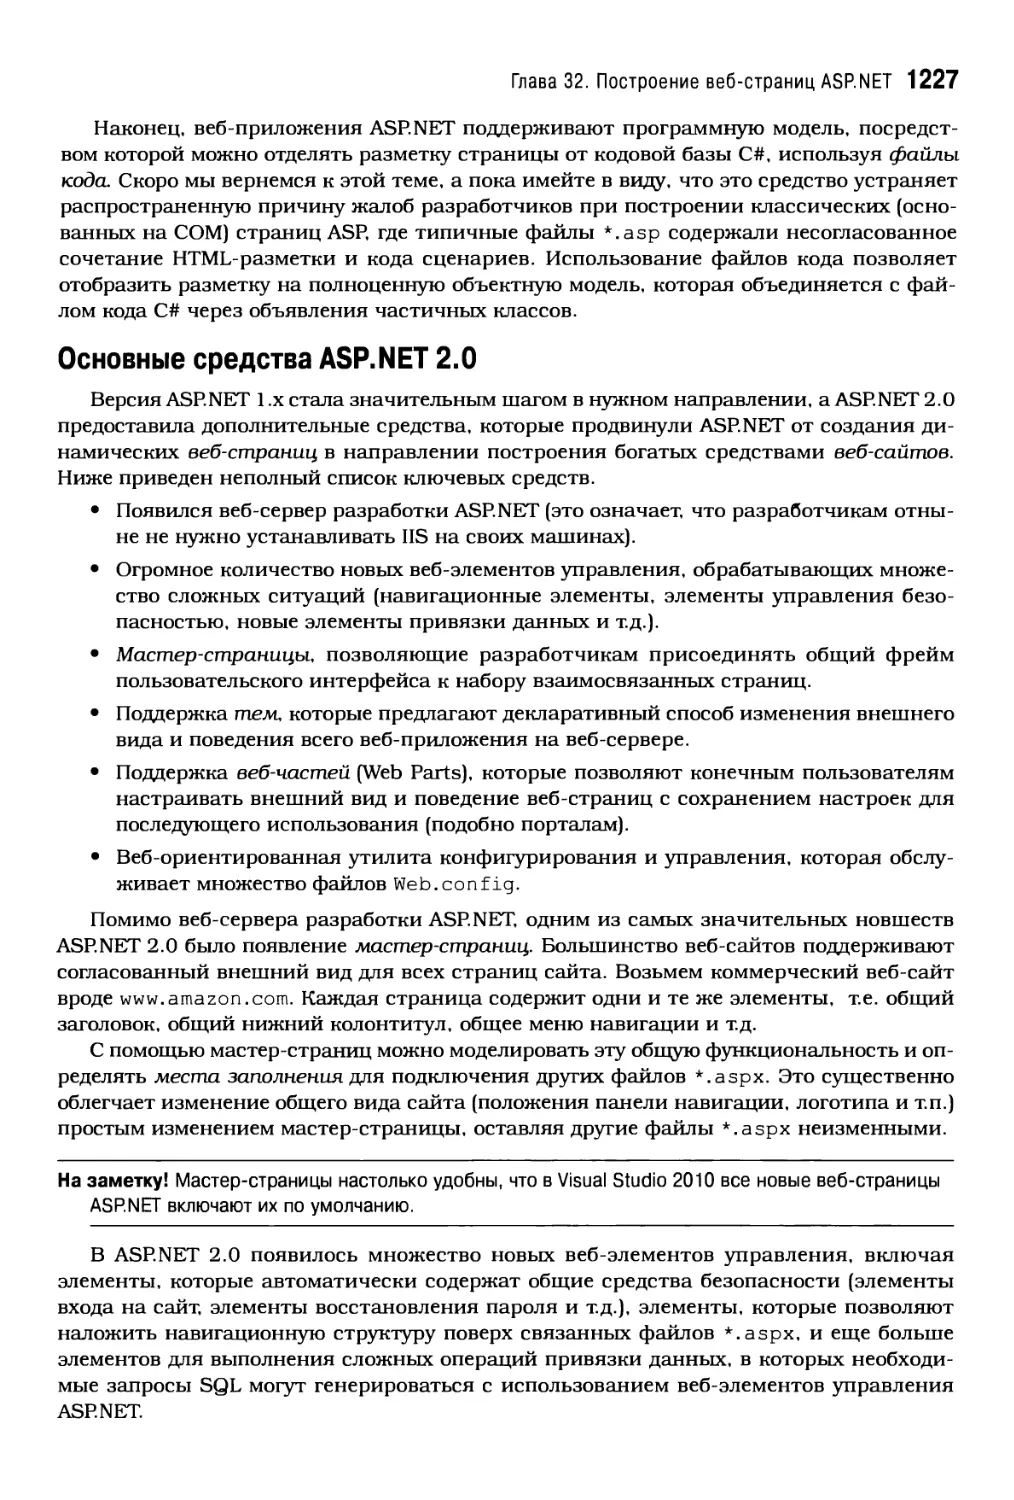 Основные средства ASP.NET 2.0